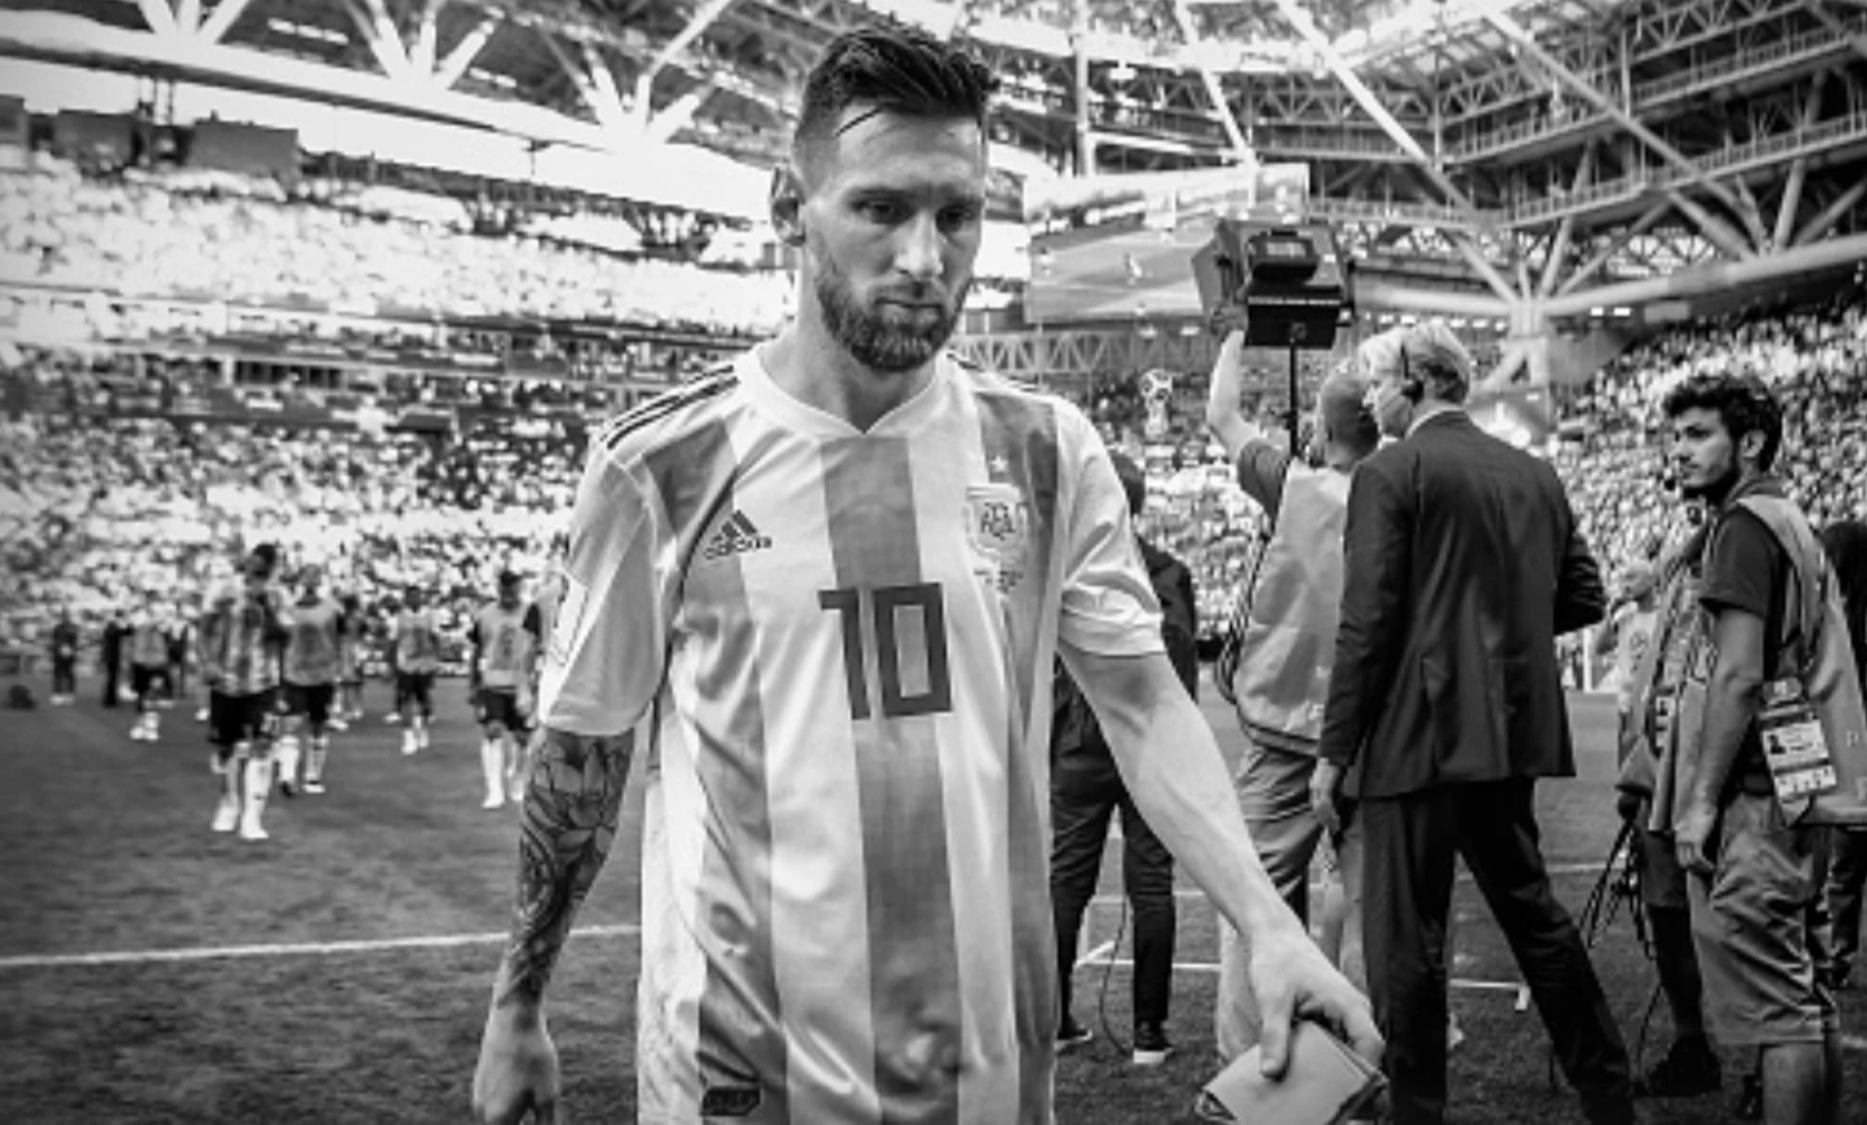 7 khoảnh khắc buồn nhất lịch sử World Cup mãi đọng lại trong lòng người hâm mộ: Messi bước qua cúp vàng, cái cúi đầu của Zidane và nước mắt của Son Heung-min - Ảnh 1.